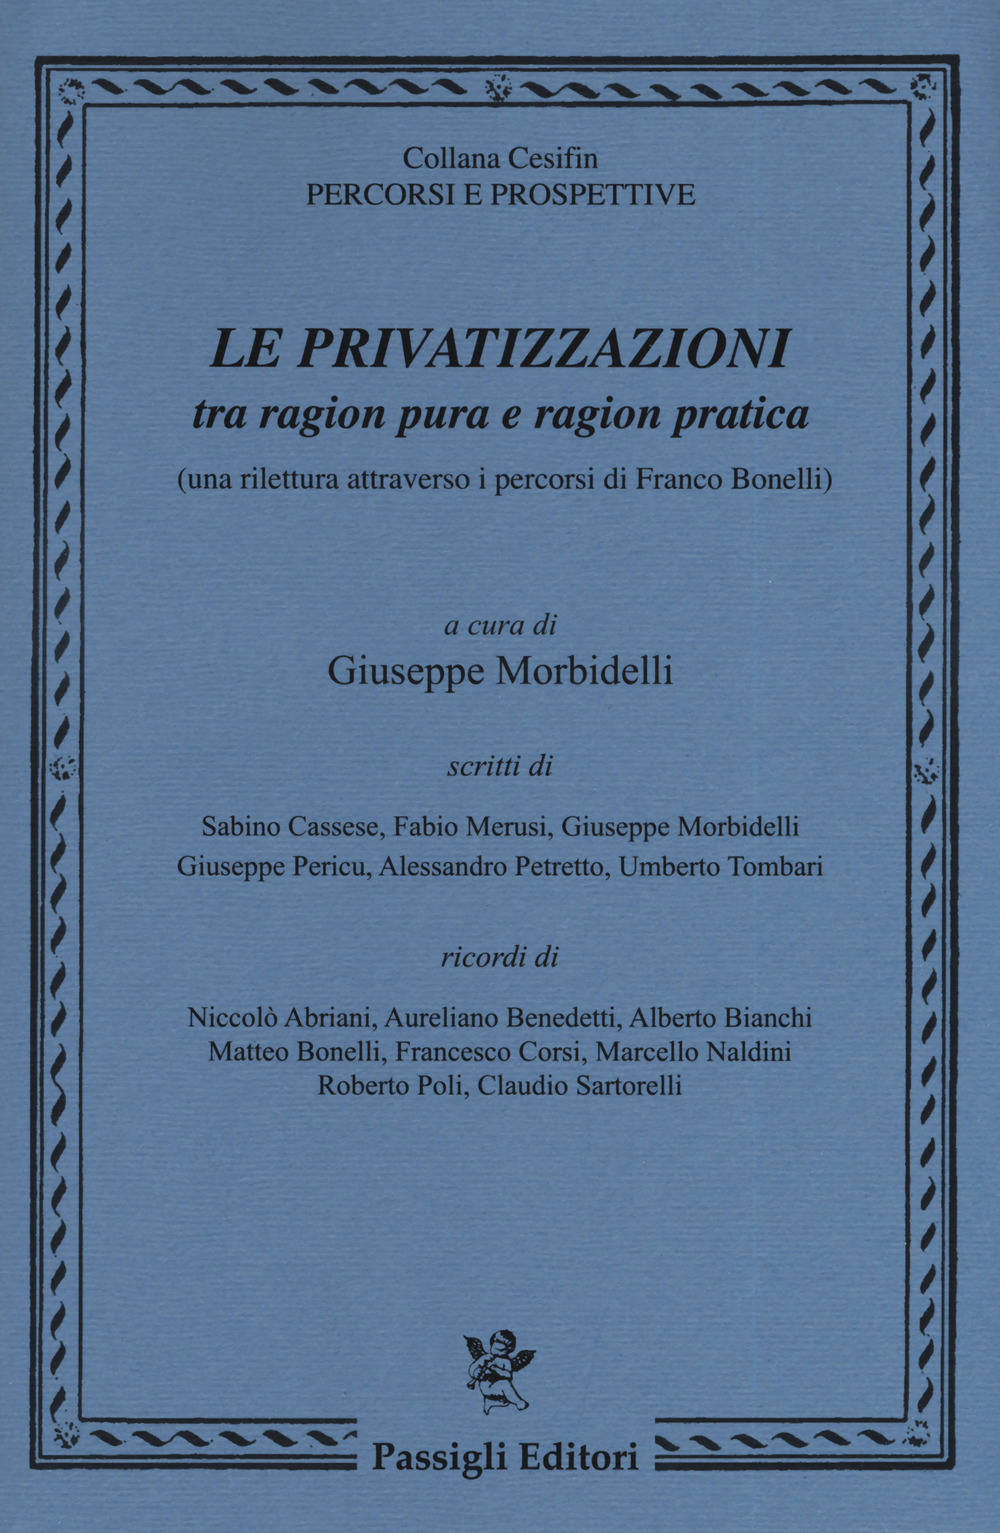 Le privatizzazioni tra ragion pura e ragion pratica (una rilettura attraverso i percorsi di Franco Bonelli)